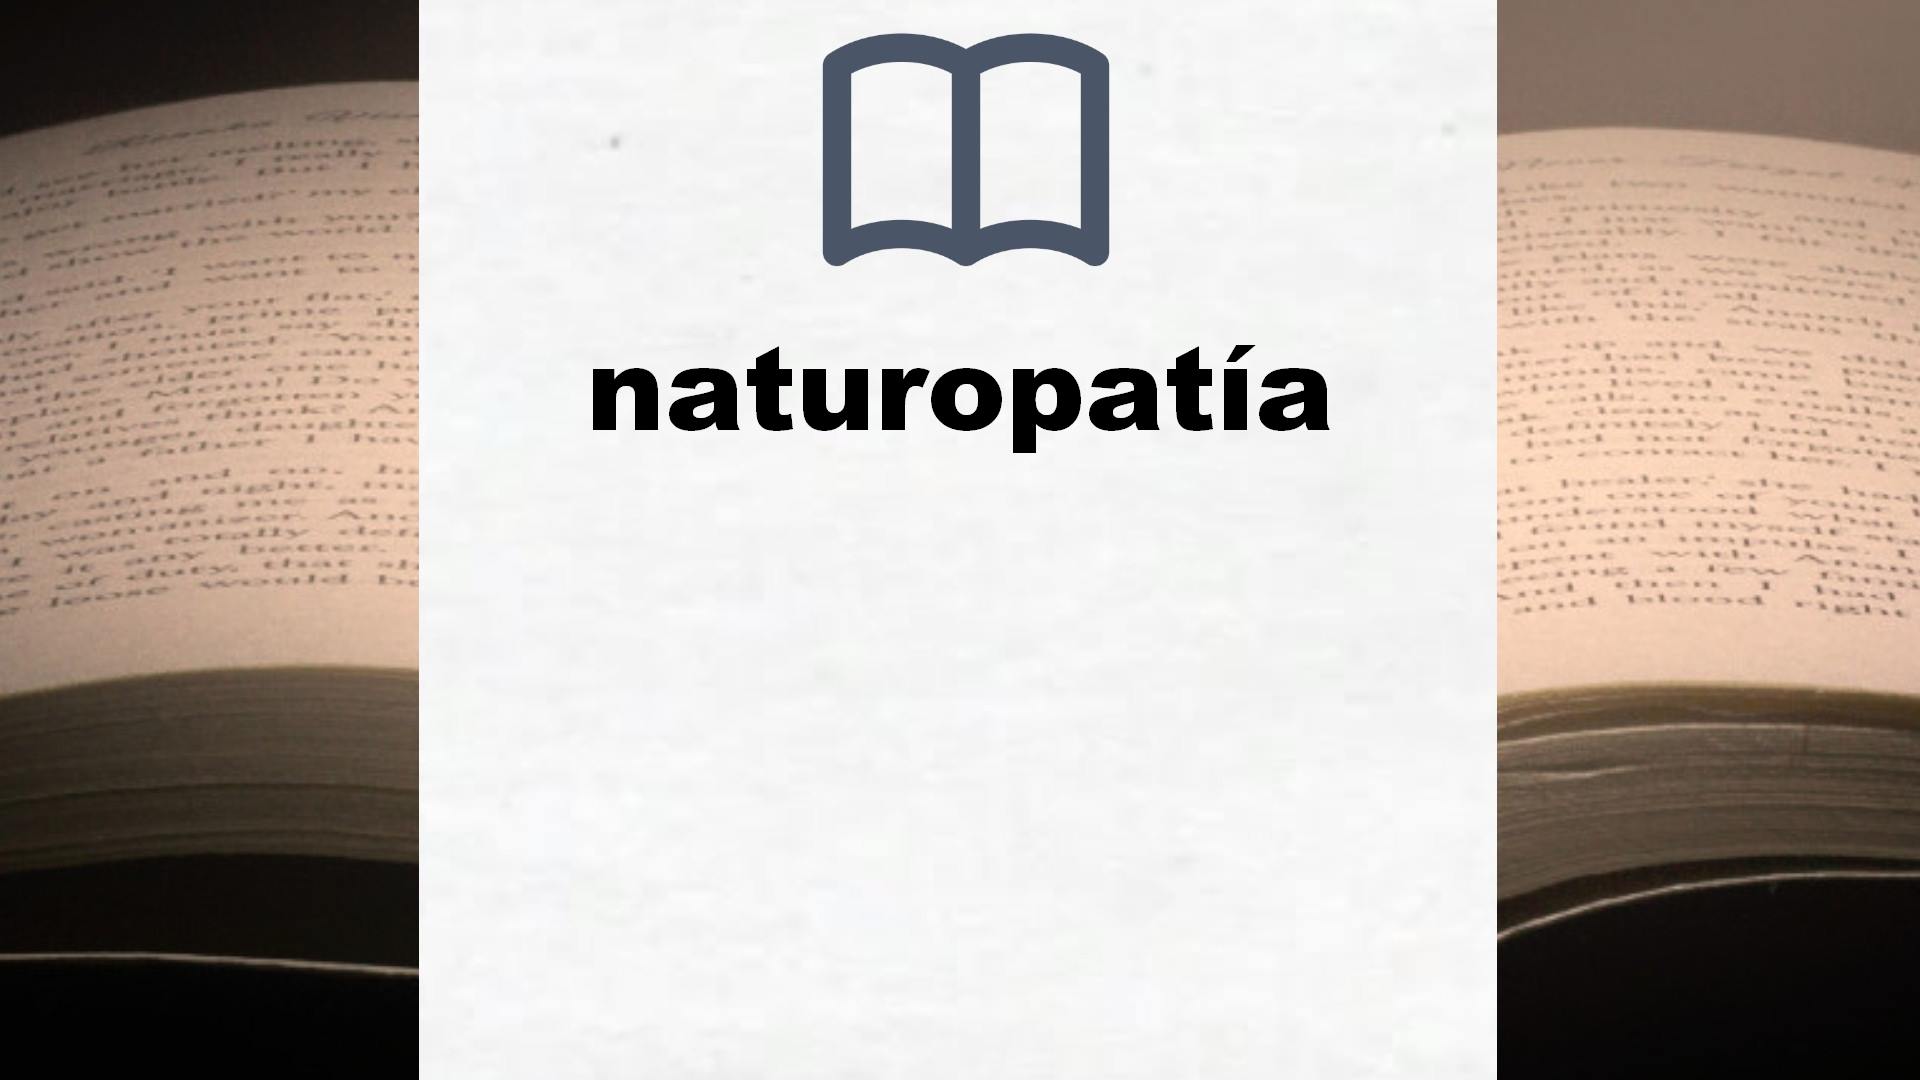 Libros sobre naturopatía